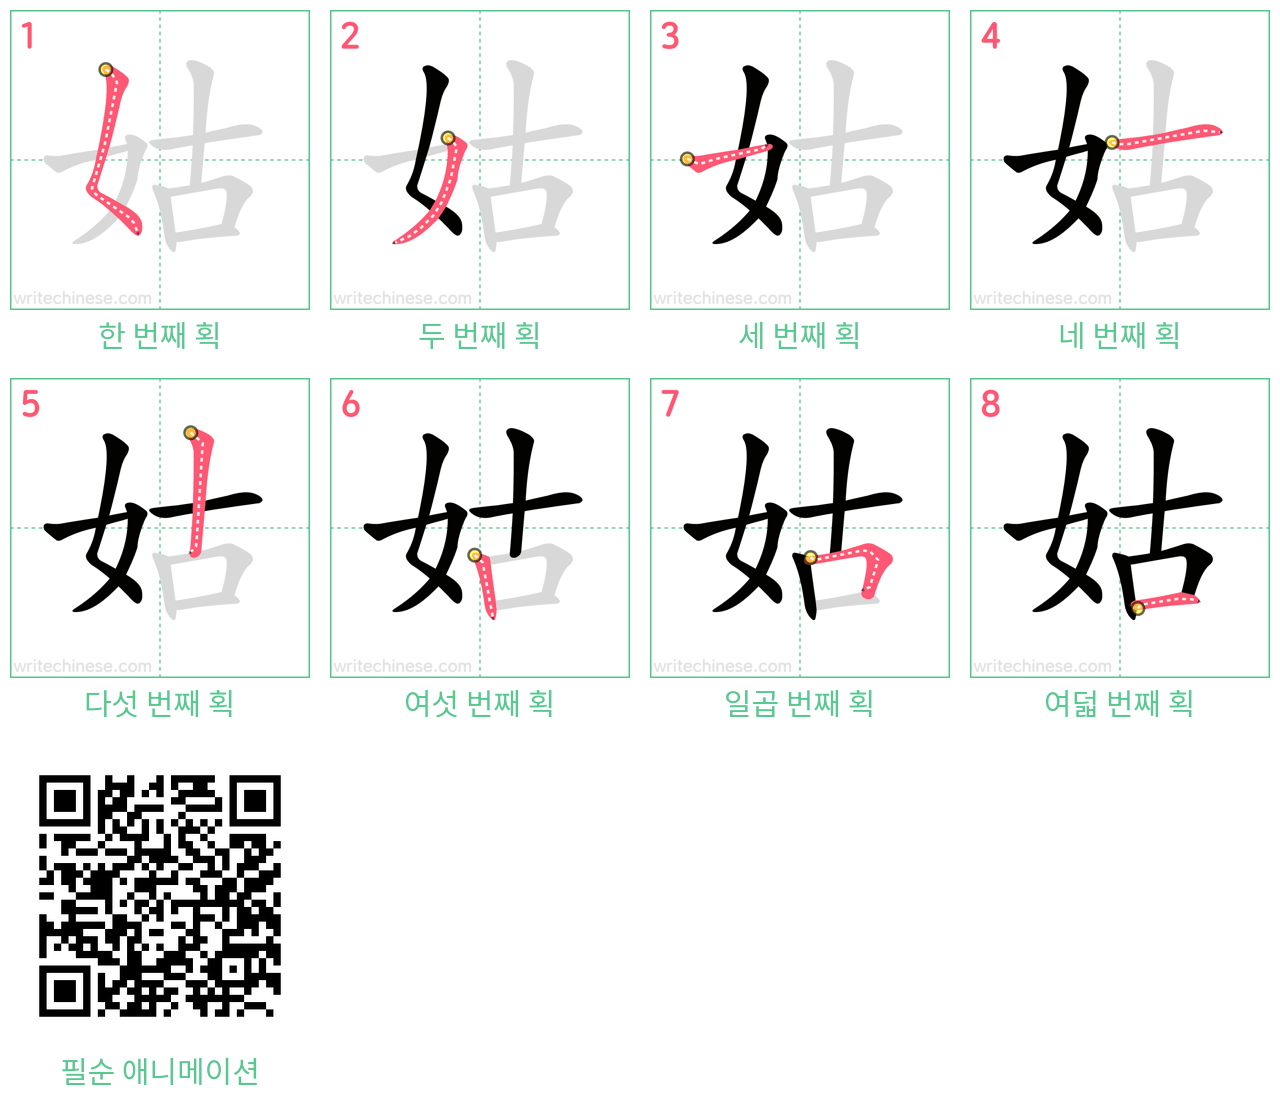 姑 step-by-step stroke order diagrams